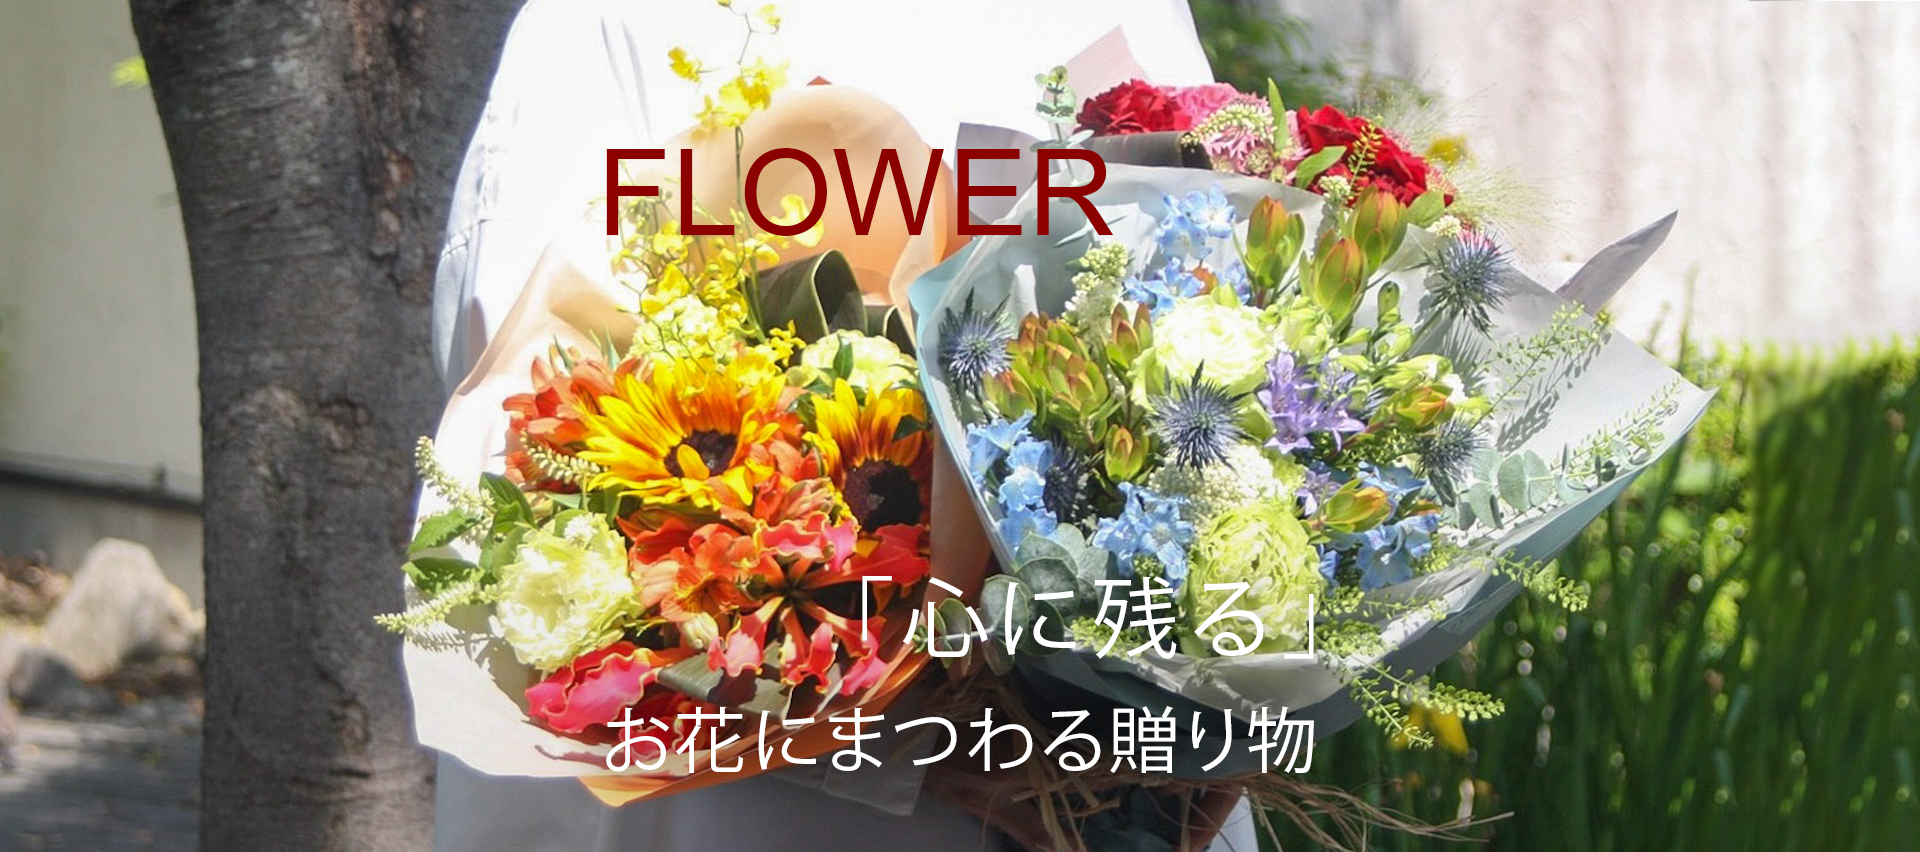 FLOWER 「心に残る」お花にまつわる贈り物